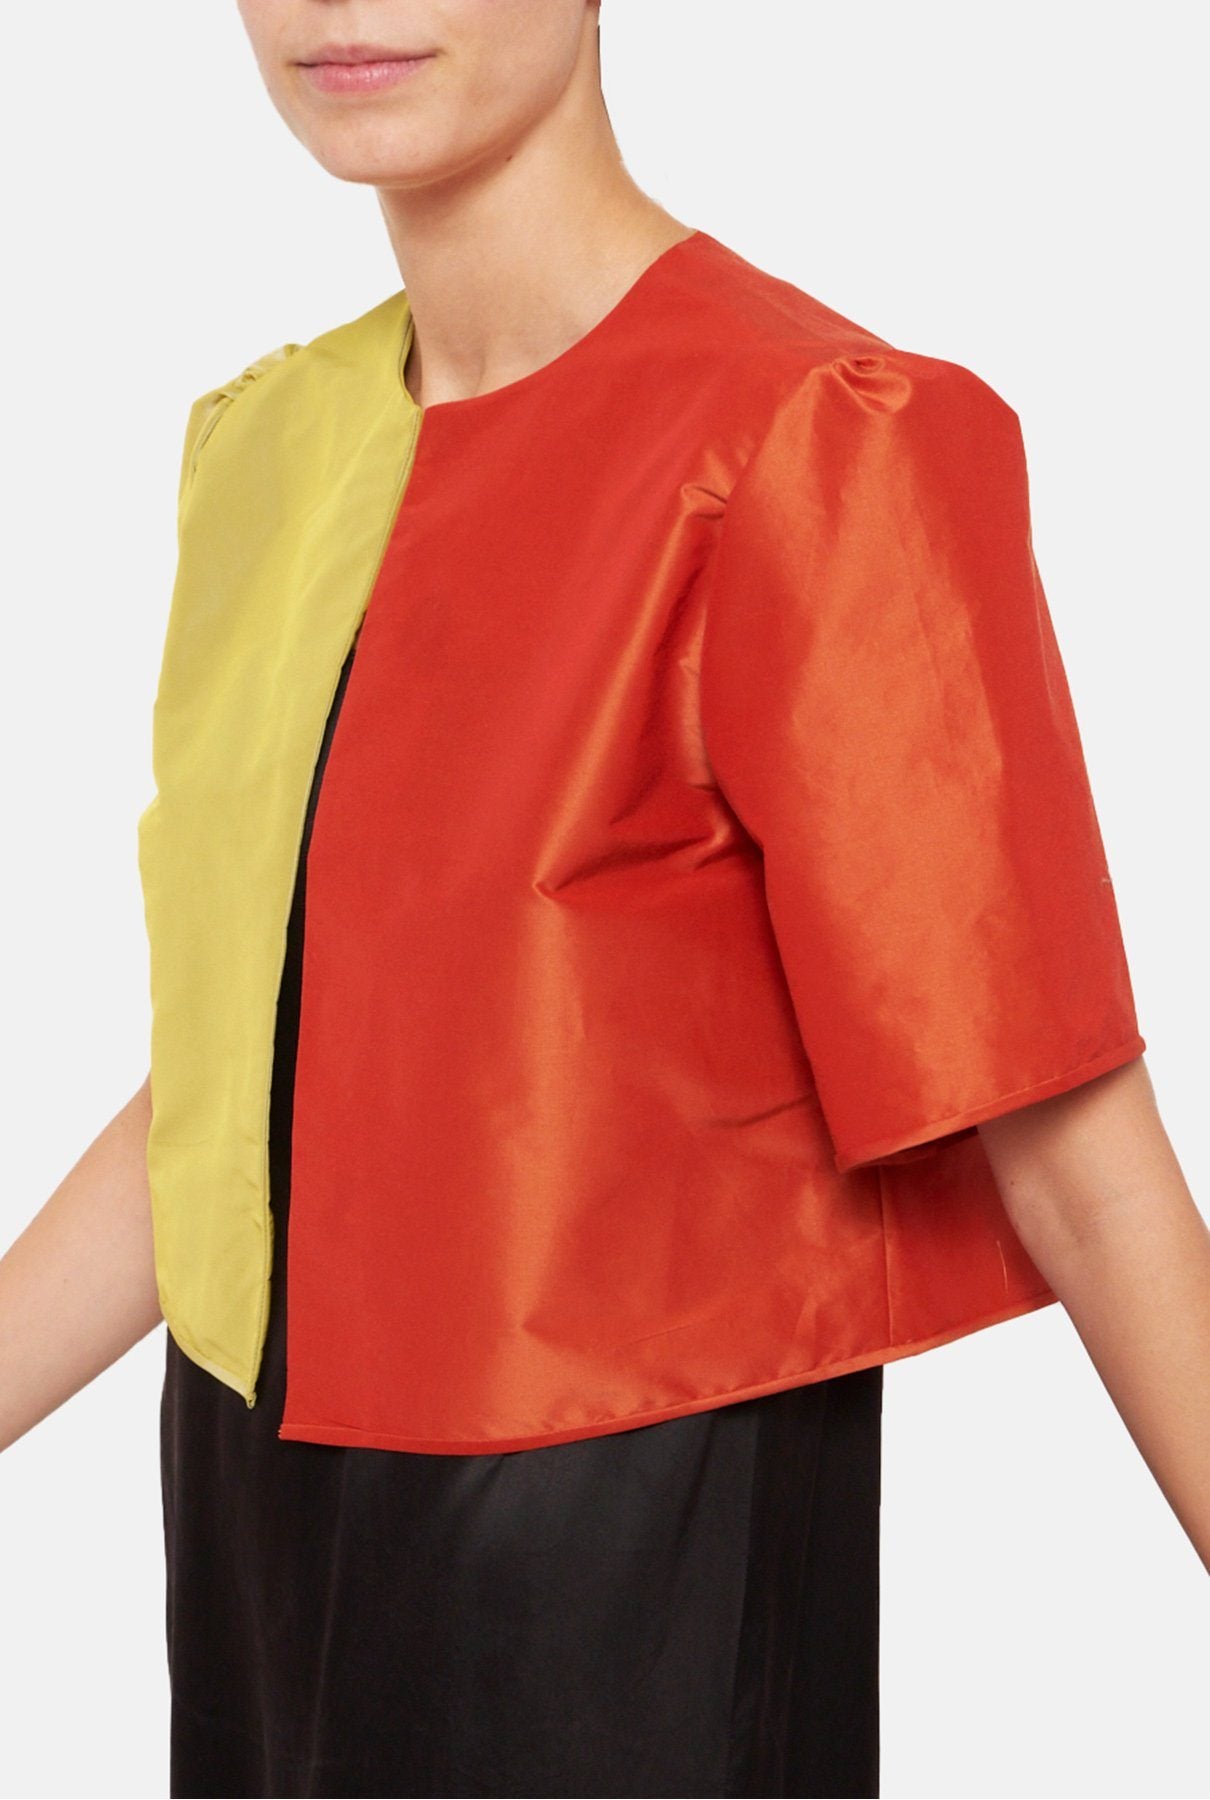 Chaqueta de verano bicolor amarillo-naranja jacket Luciana 